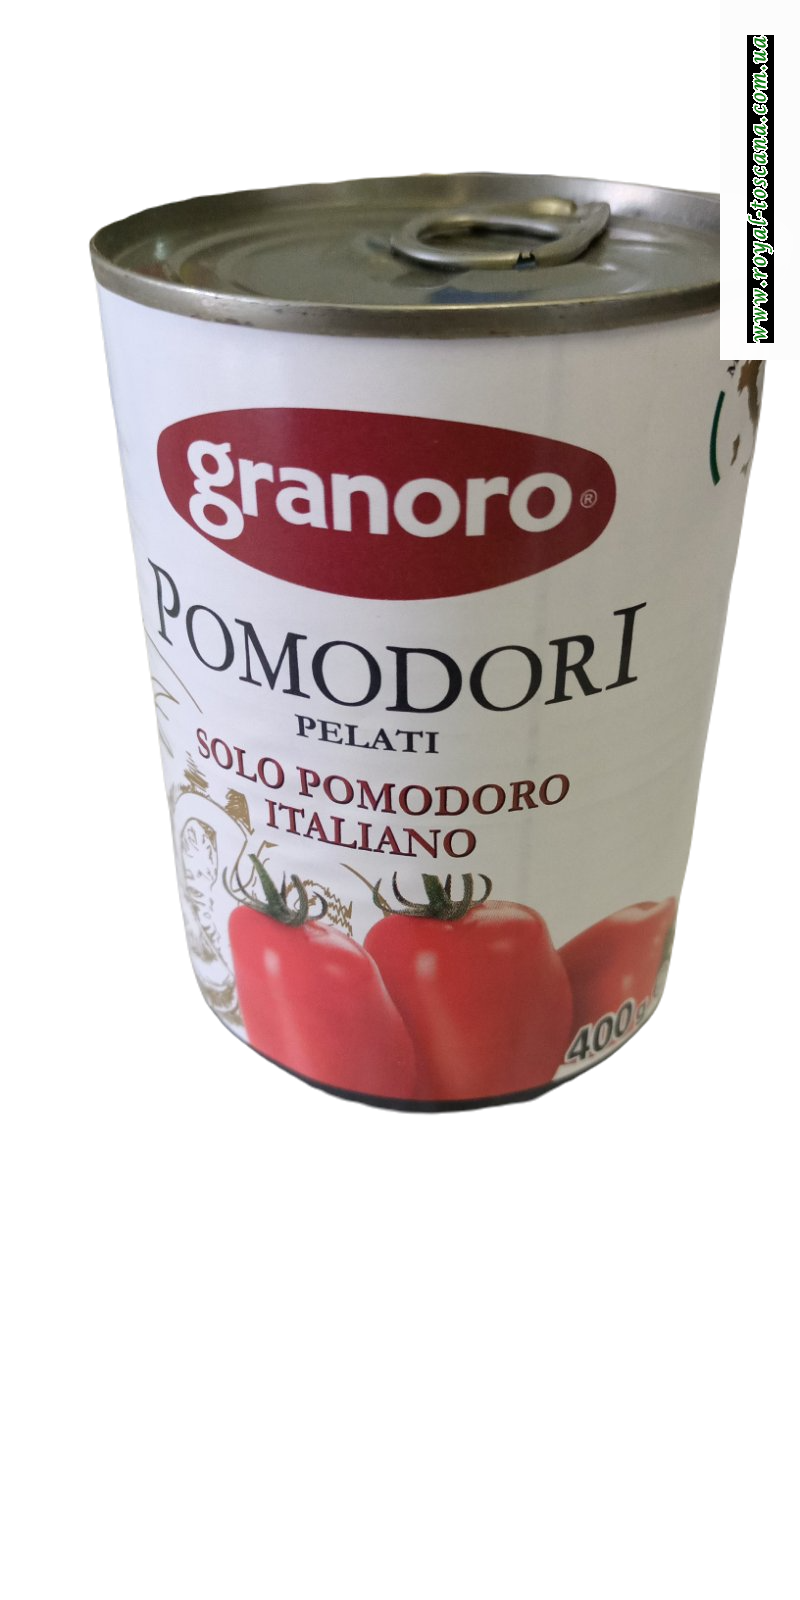 Помидоры очищенные Pomodoro pelatti Granoro